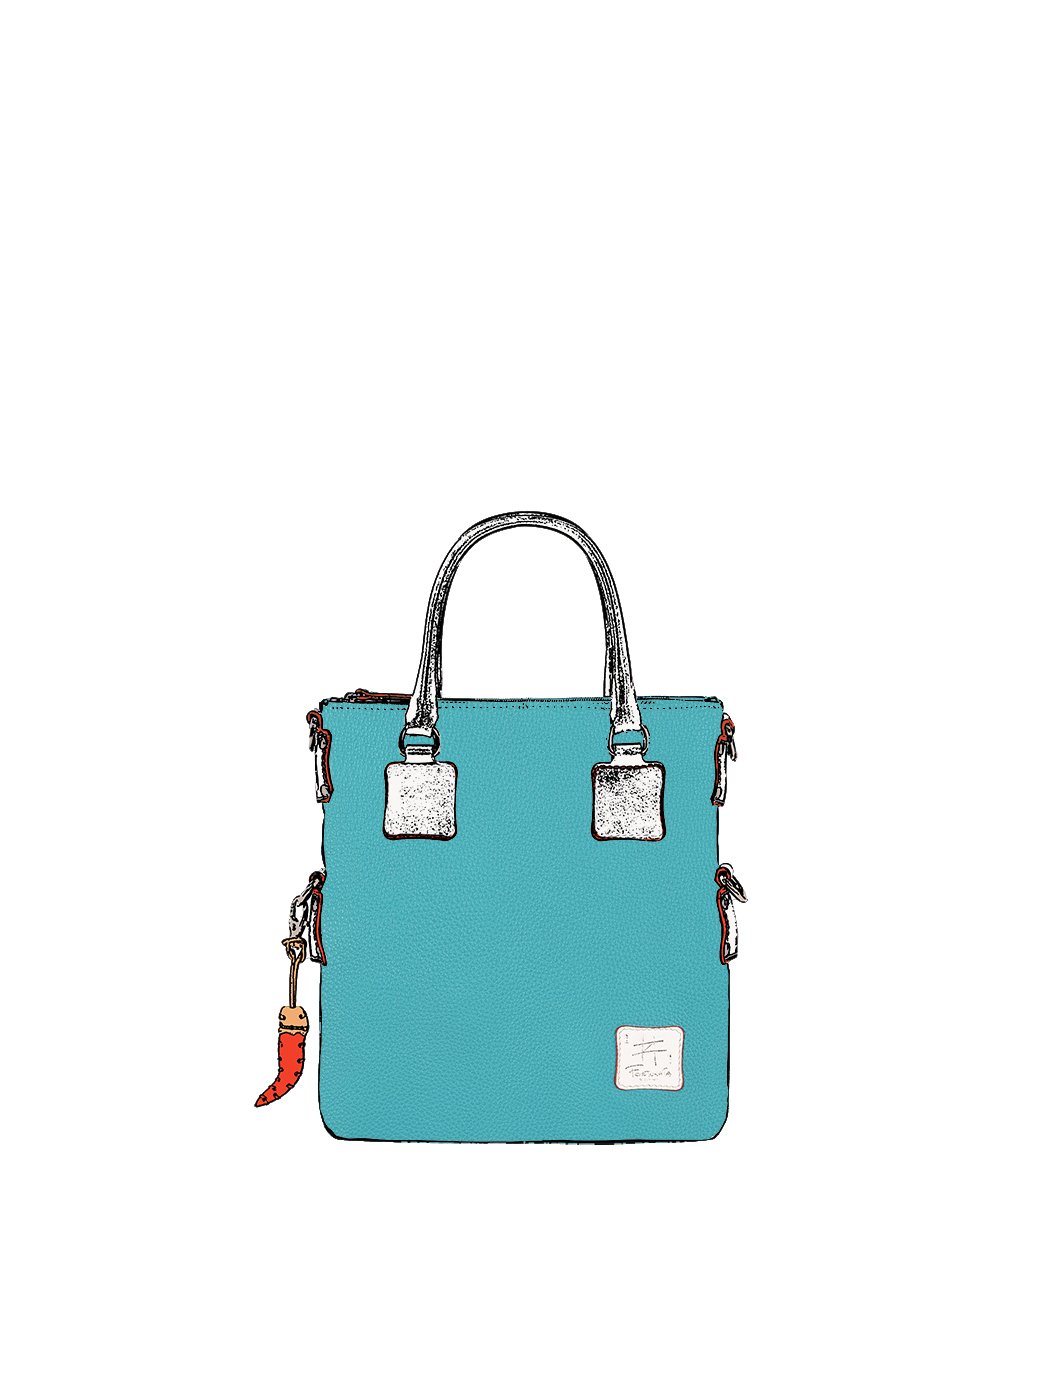 Дизайнерская мини - сумка из коллекции Fortunata светло - голубого цвета